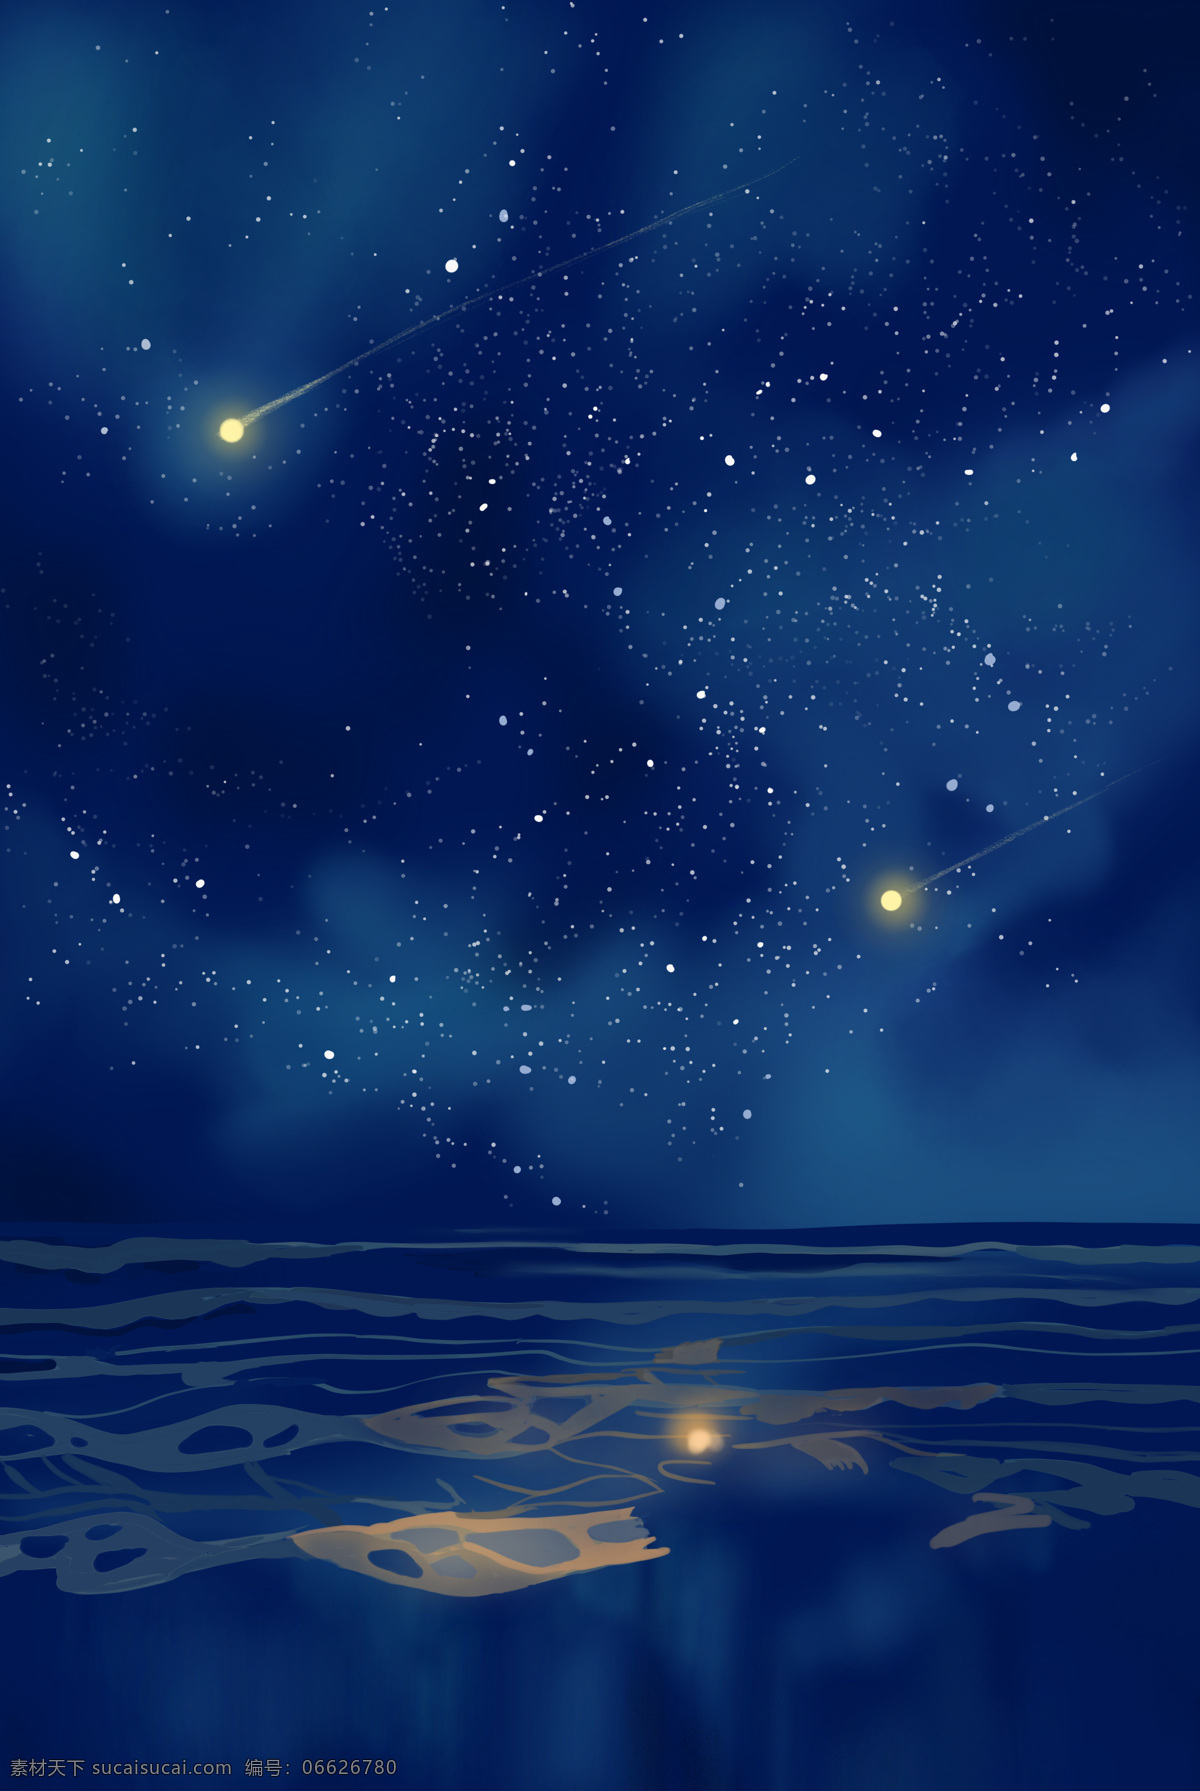 漫天 星星 夜空 唯美 水彩 背景 底纹边框 背景底纹